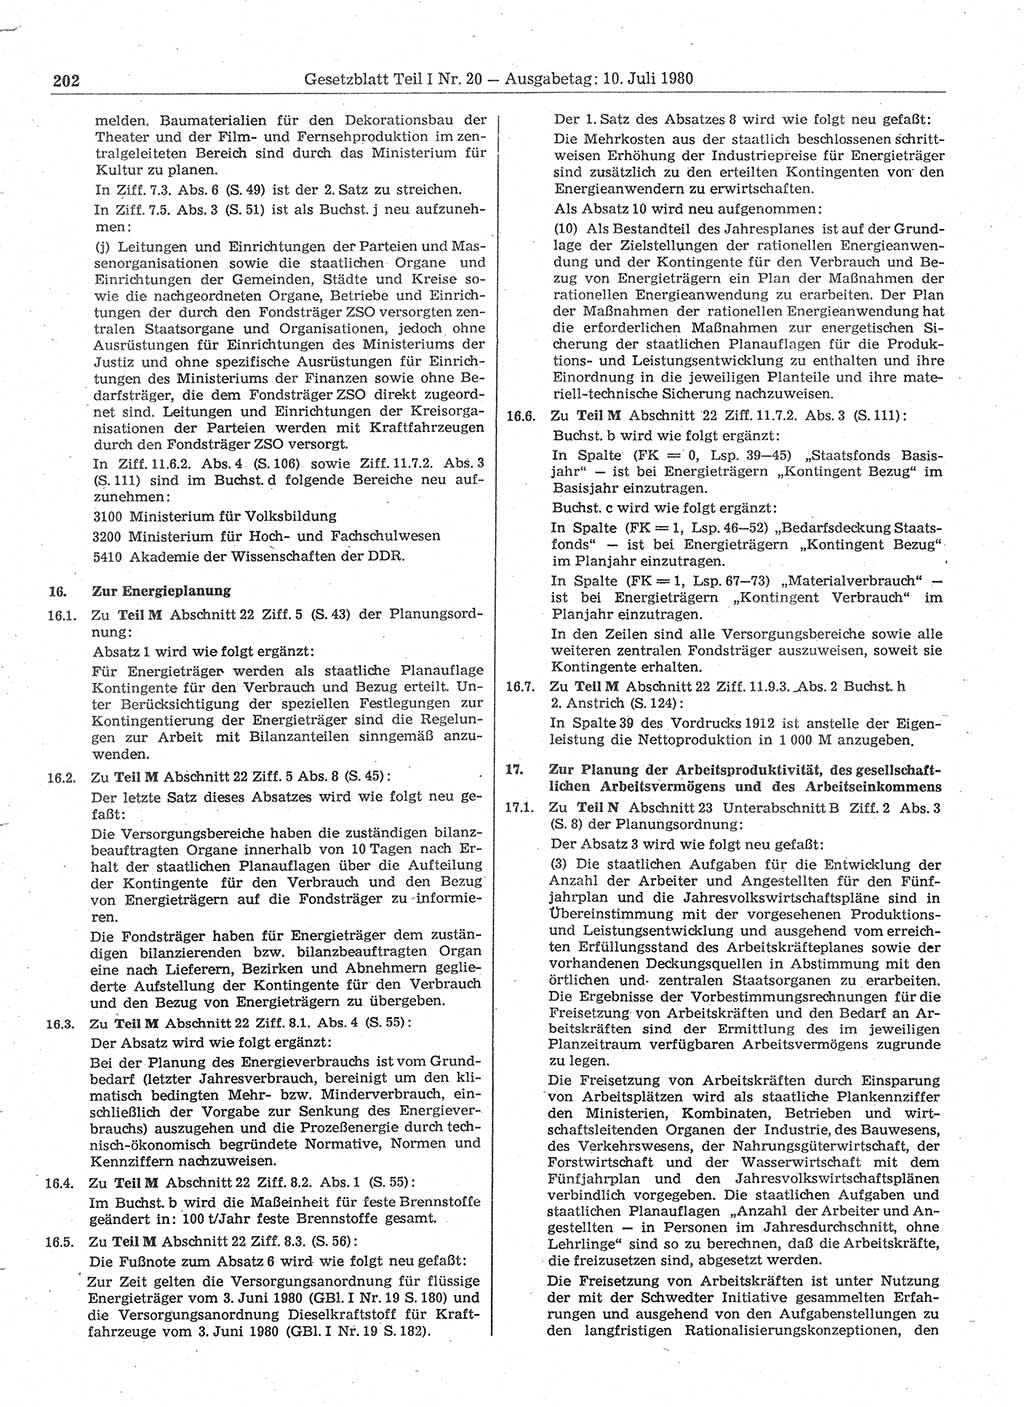 Gesetzblatt (GBl.) der Deutschen Demokratischen Republik (DDR) Teil Ⅰ 1980, Seite 202 (GBl. DDR Ⅰ 1980, S. 202)